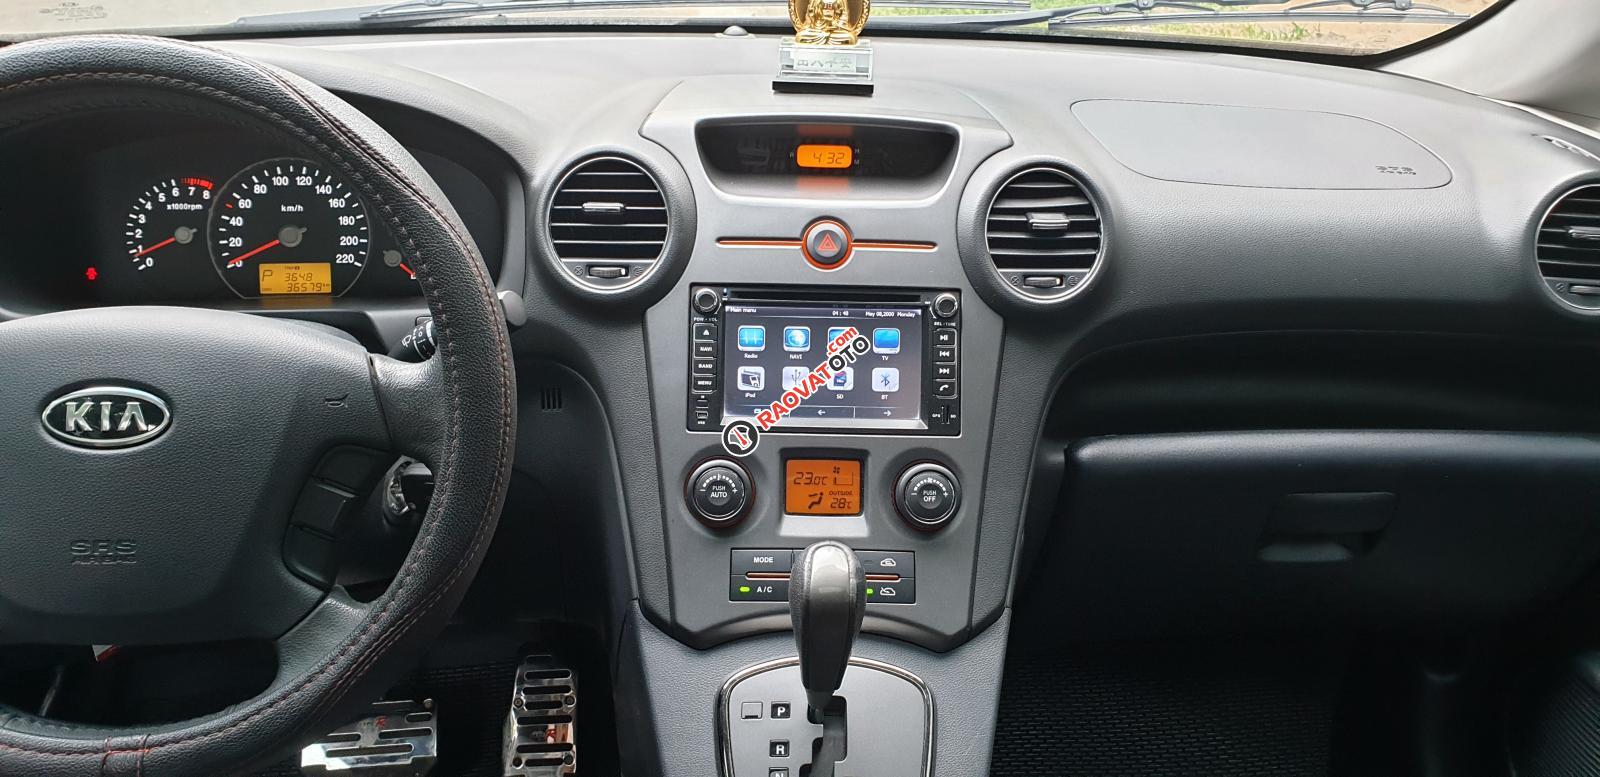 Bán Kia Carens S máy 2.0 số tự động đời T3/2014, SX 2013, màu bạc tuyệt đẹp mới 85%-11